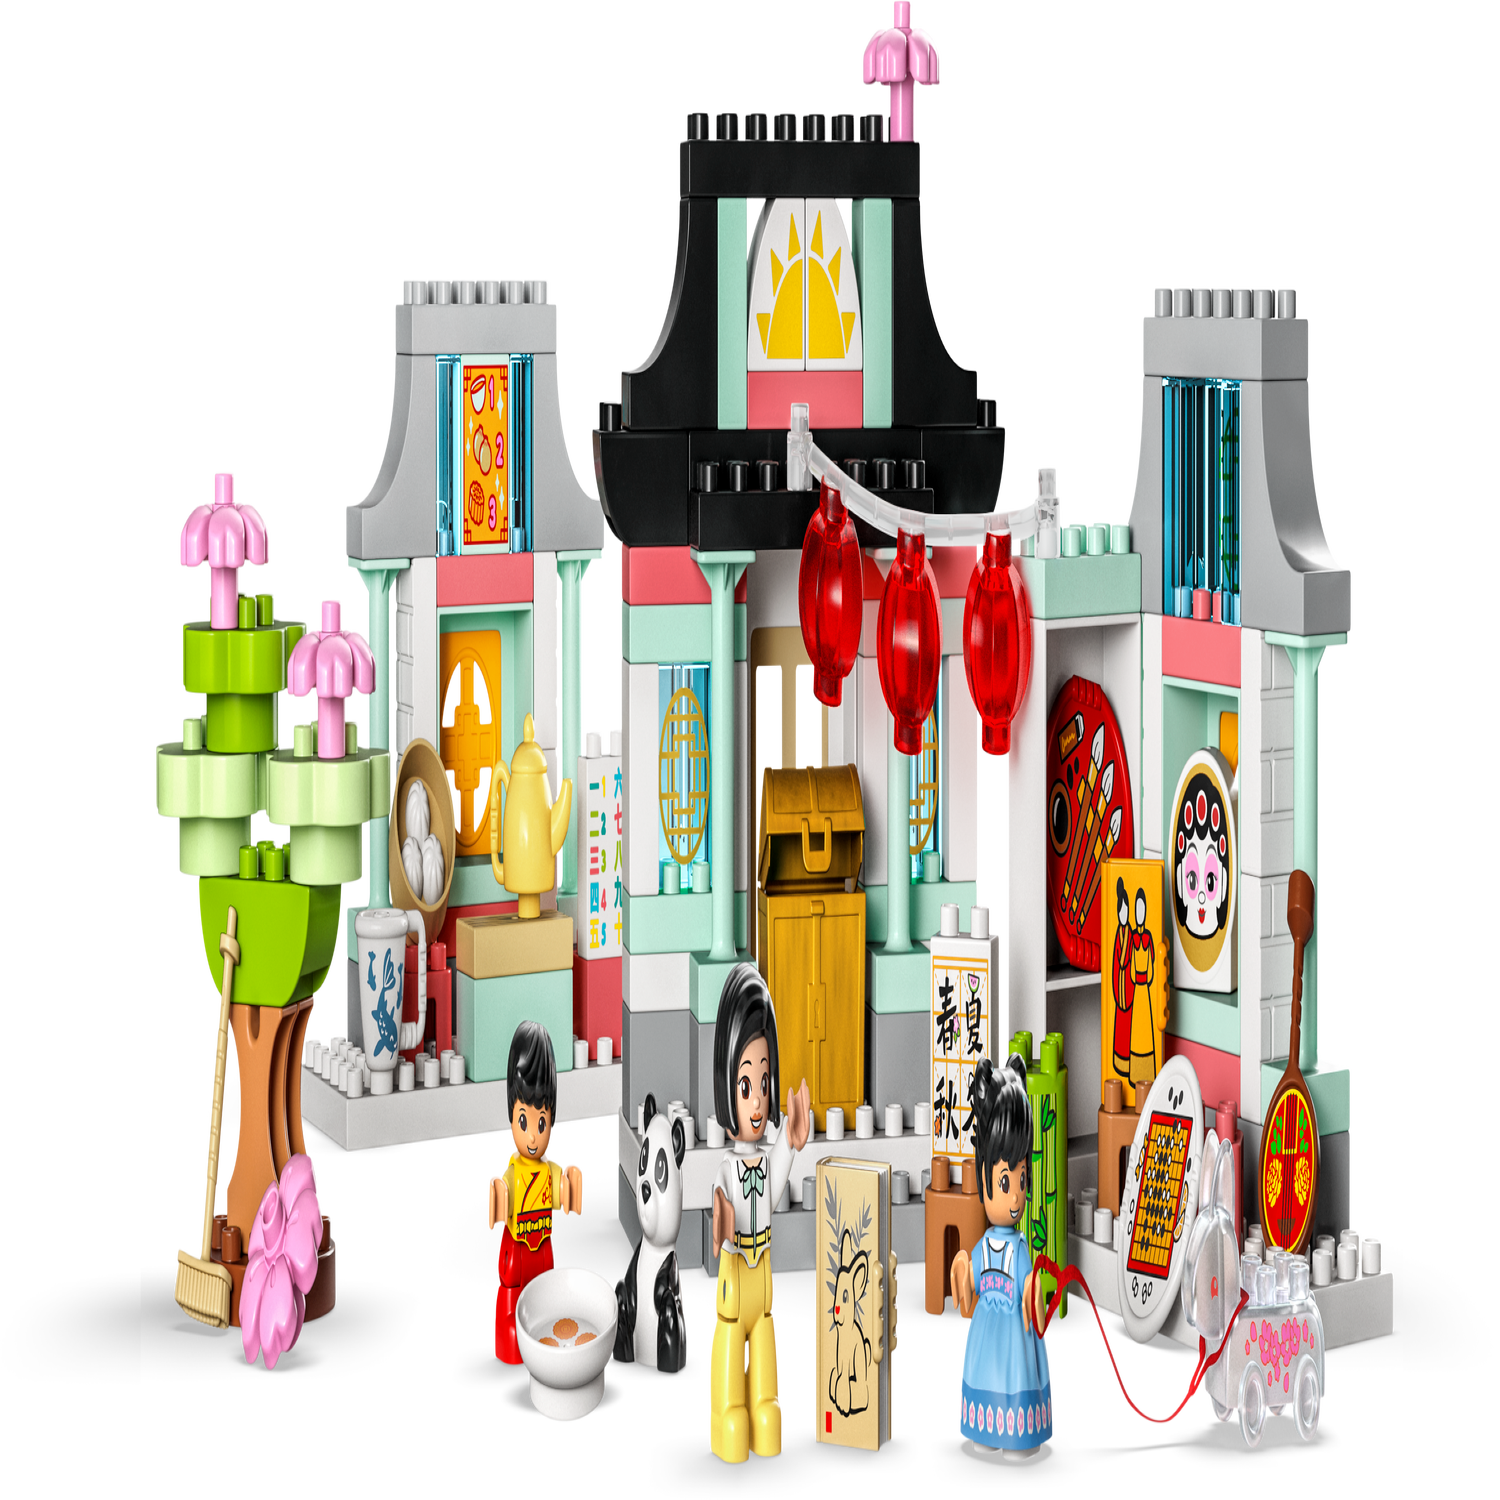 LEGO 10411 Duplo Découvrir la Culture Chinoise, Jouet Éducatif, avec  Figurine Panda, et Briques, Idée Cadeaux, pour Garçons et Filles Dès 2 Ans  : : Jeux et Jouets